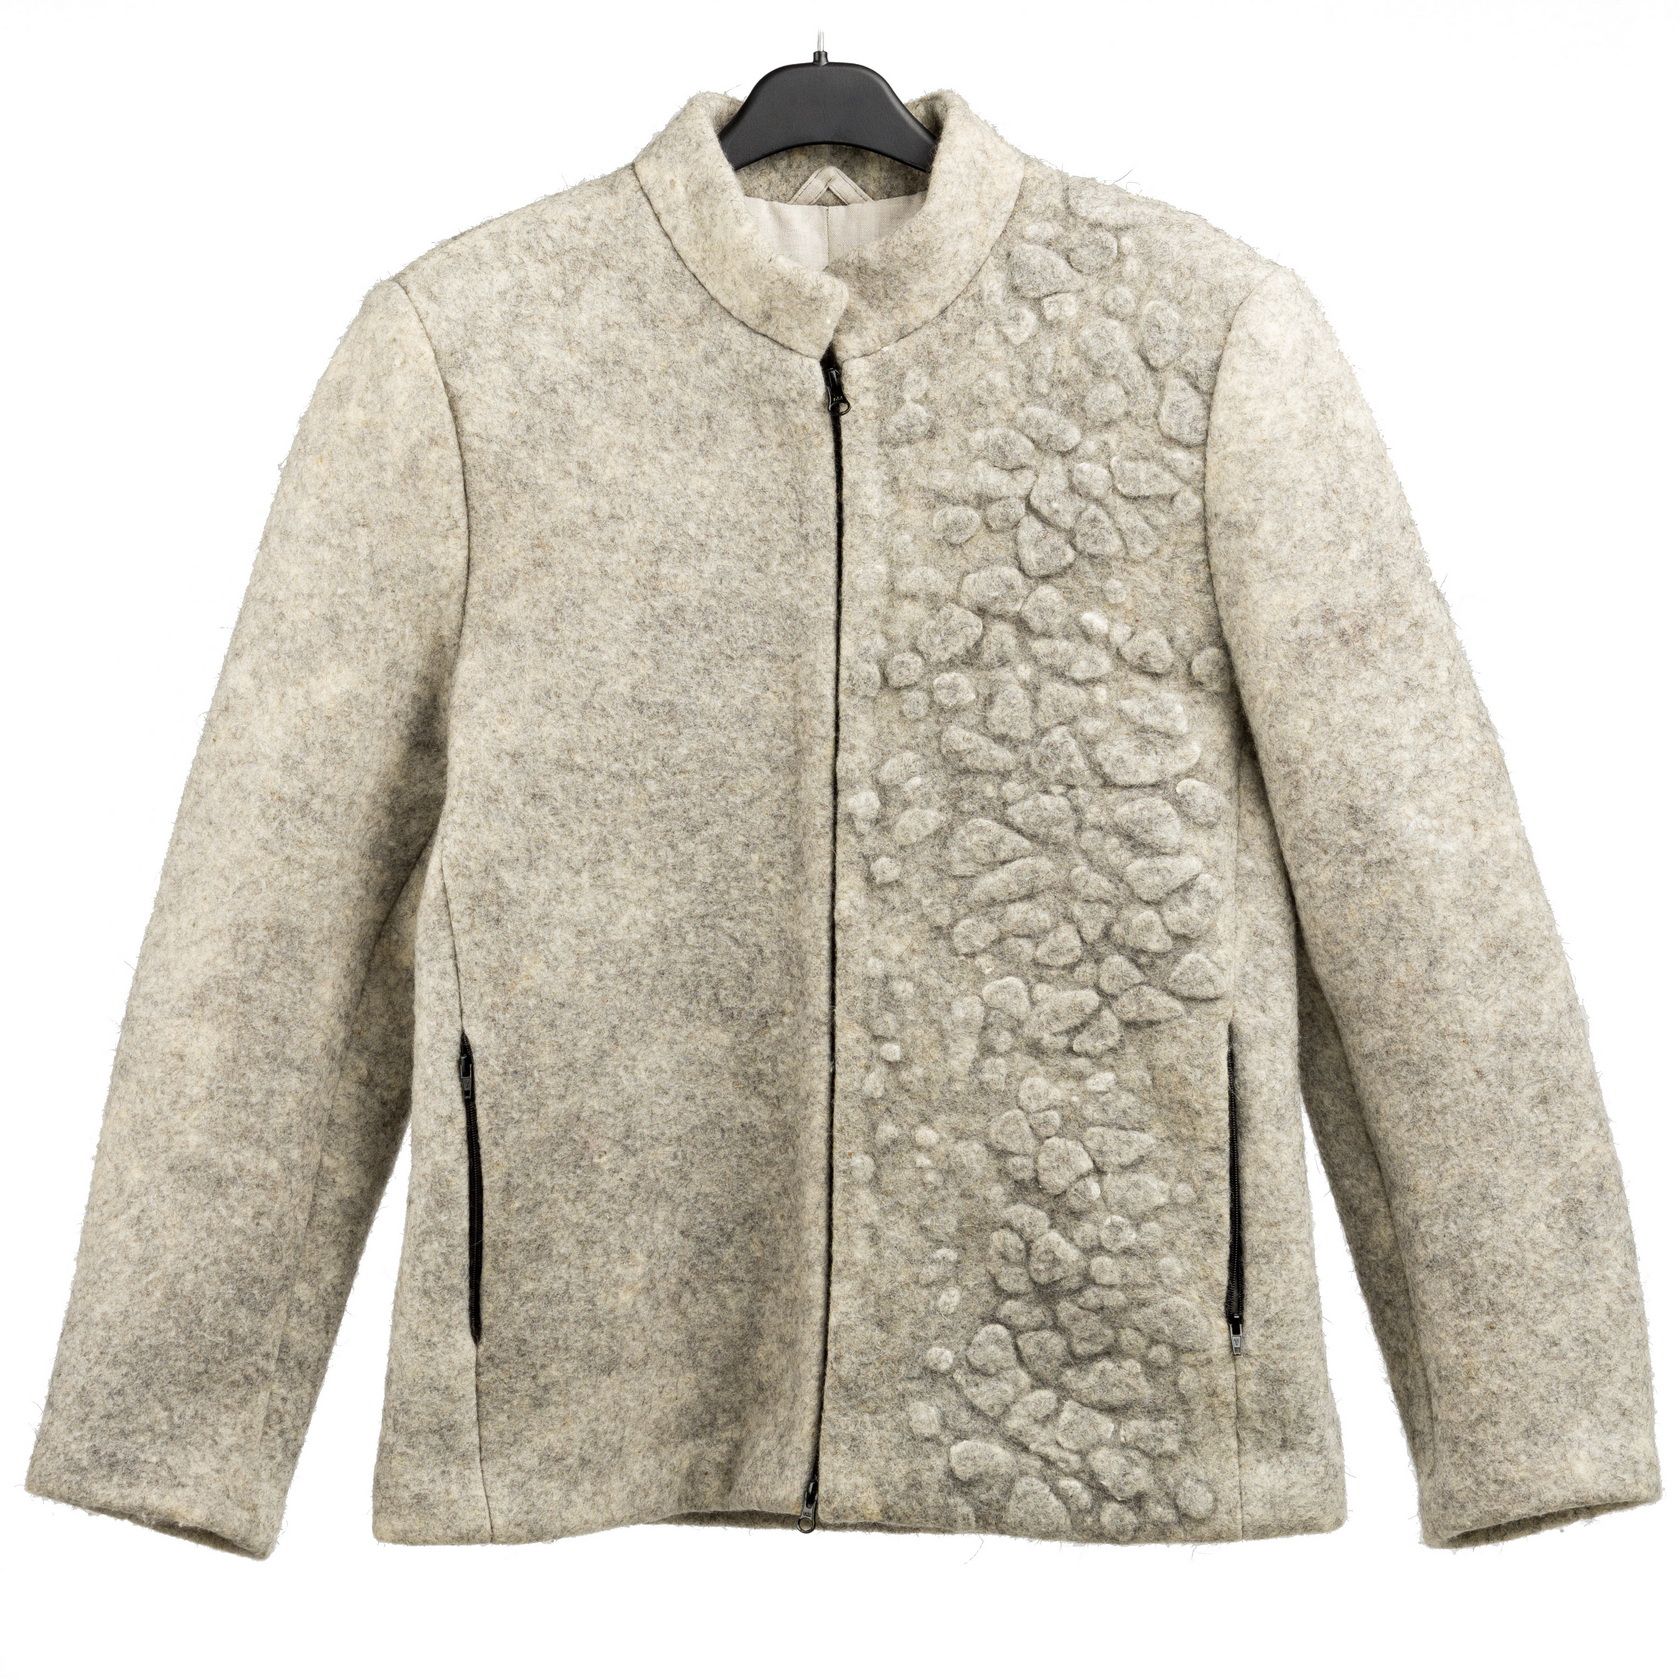 yarferma.ru куртка мужская из шерсти овцы романовской породы купить